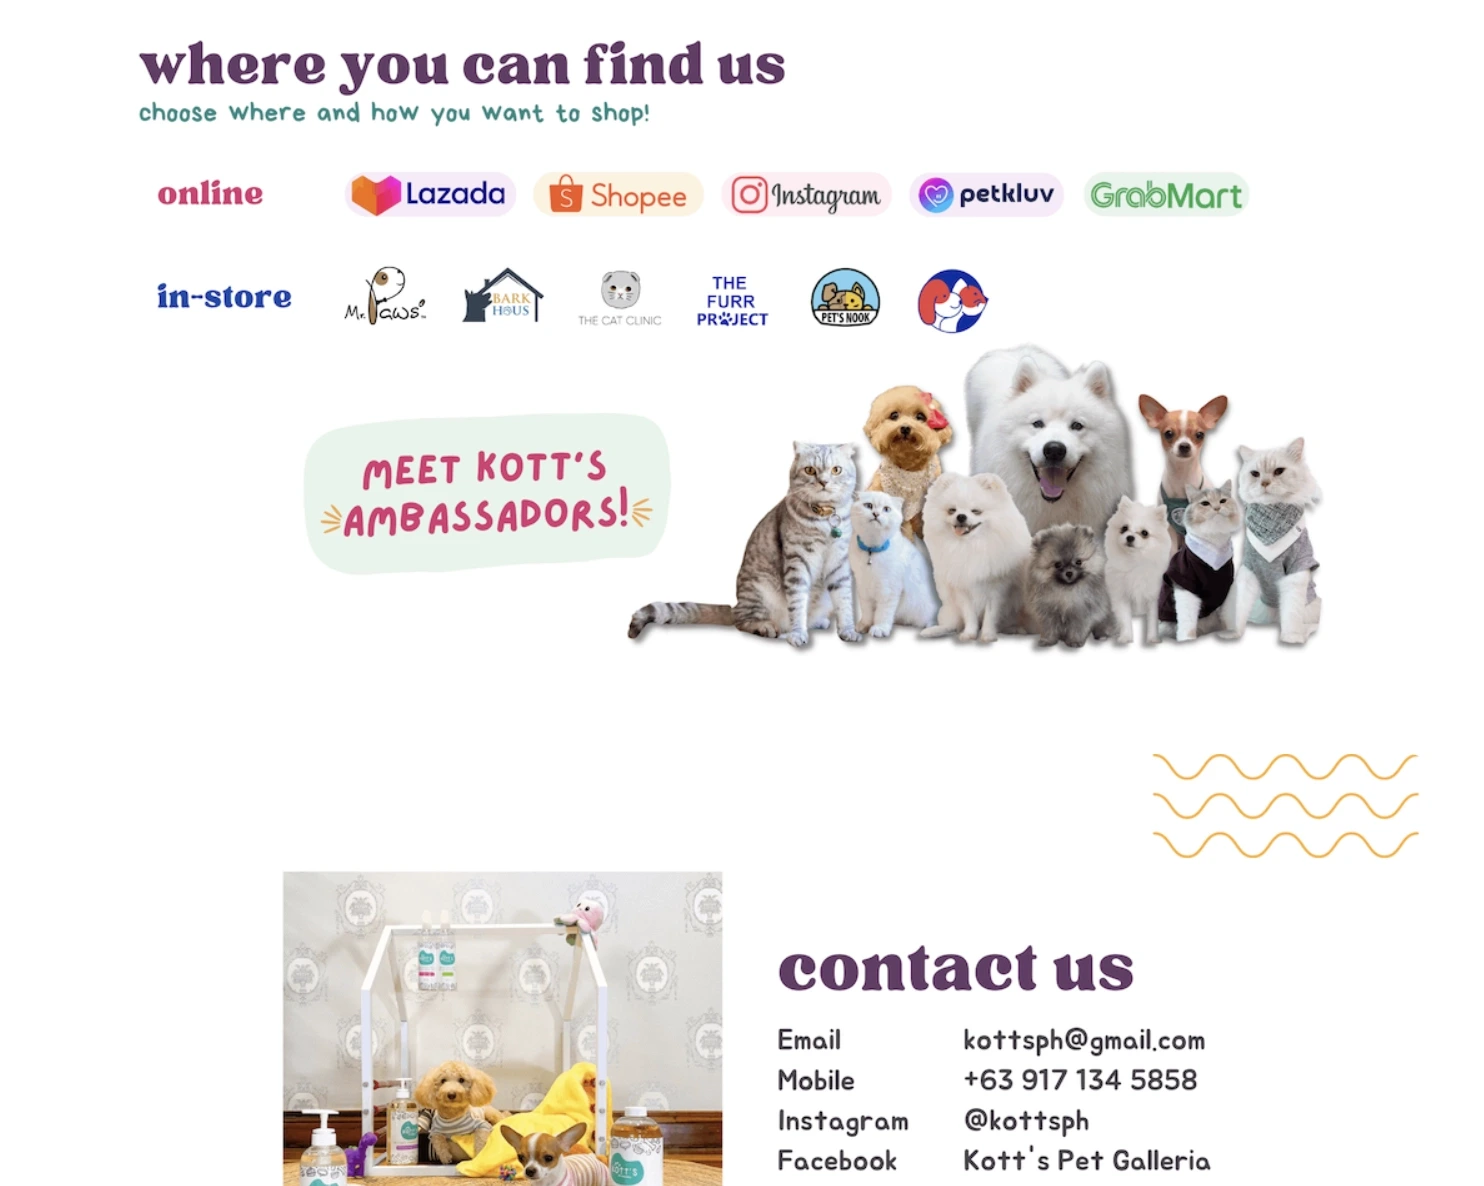 Kott's Pet Galleria Contact Us Banner